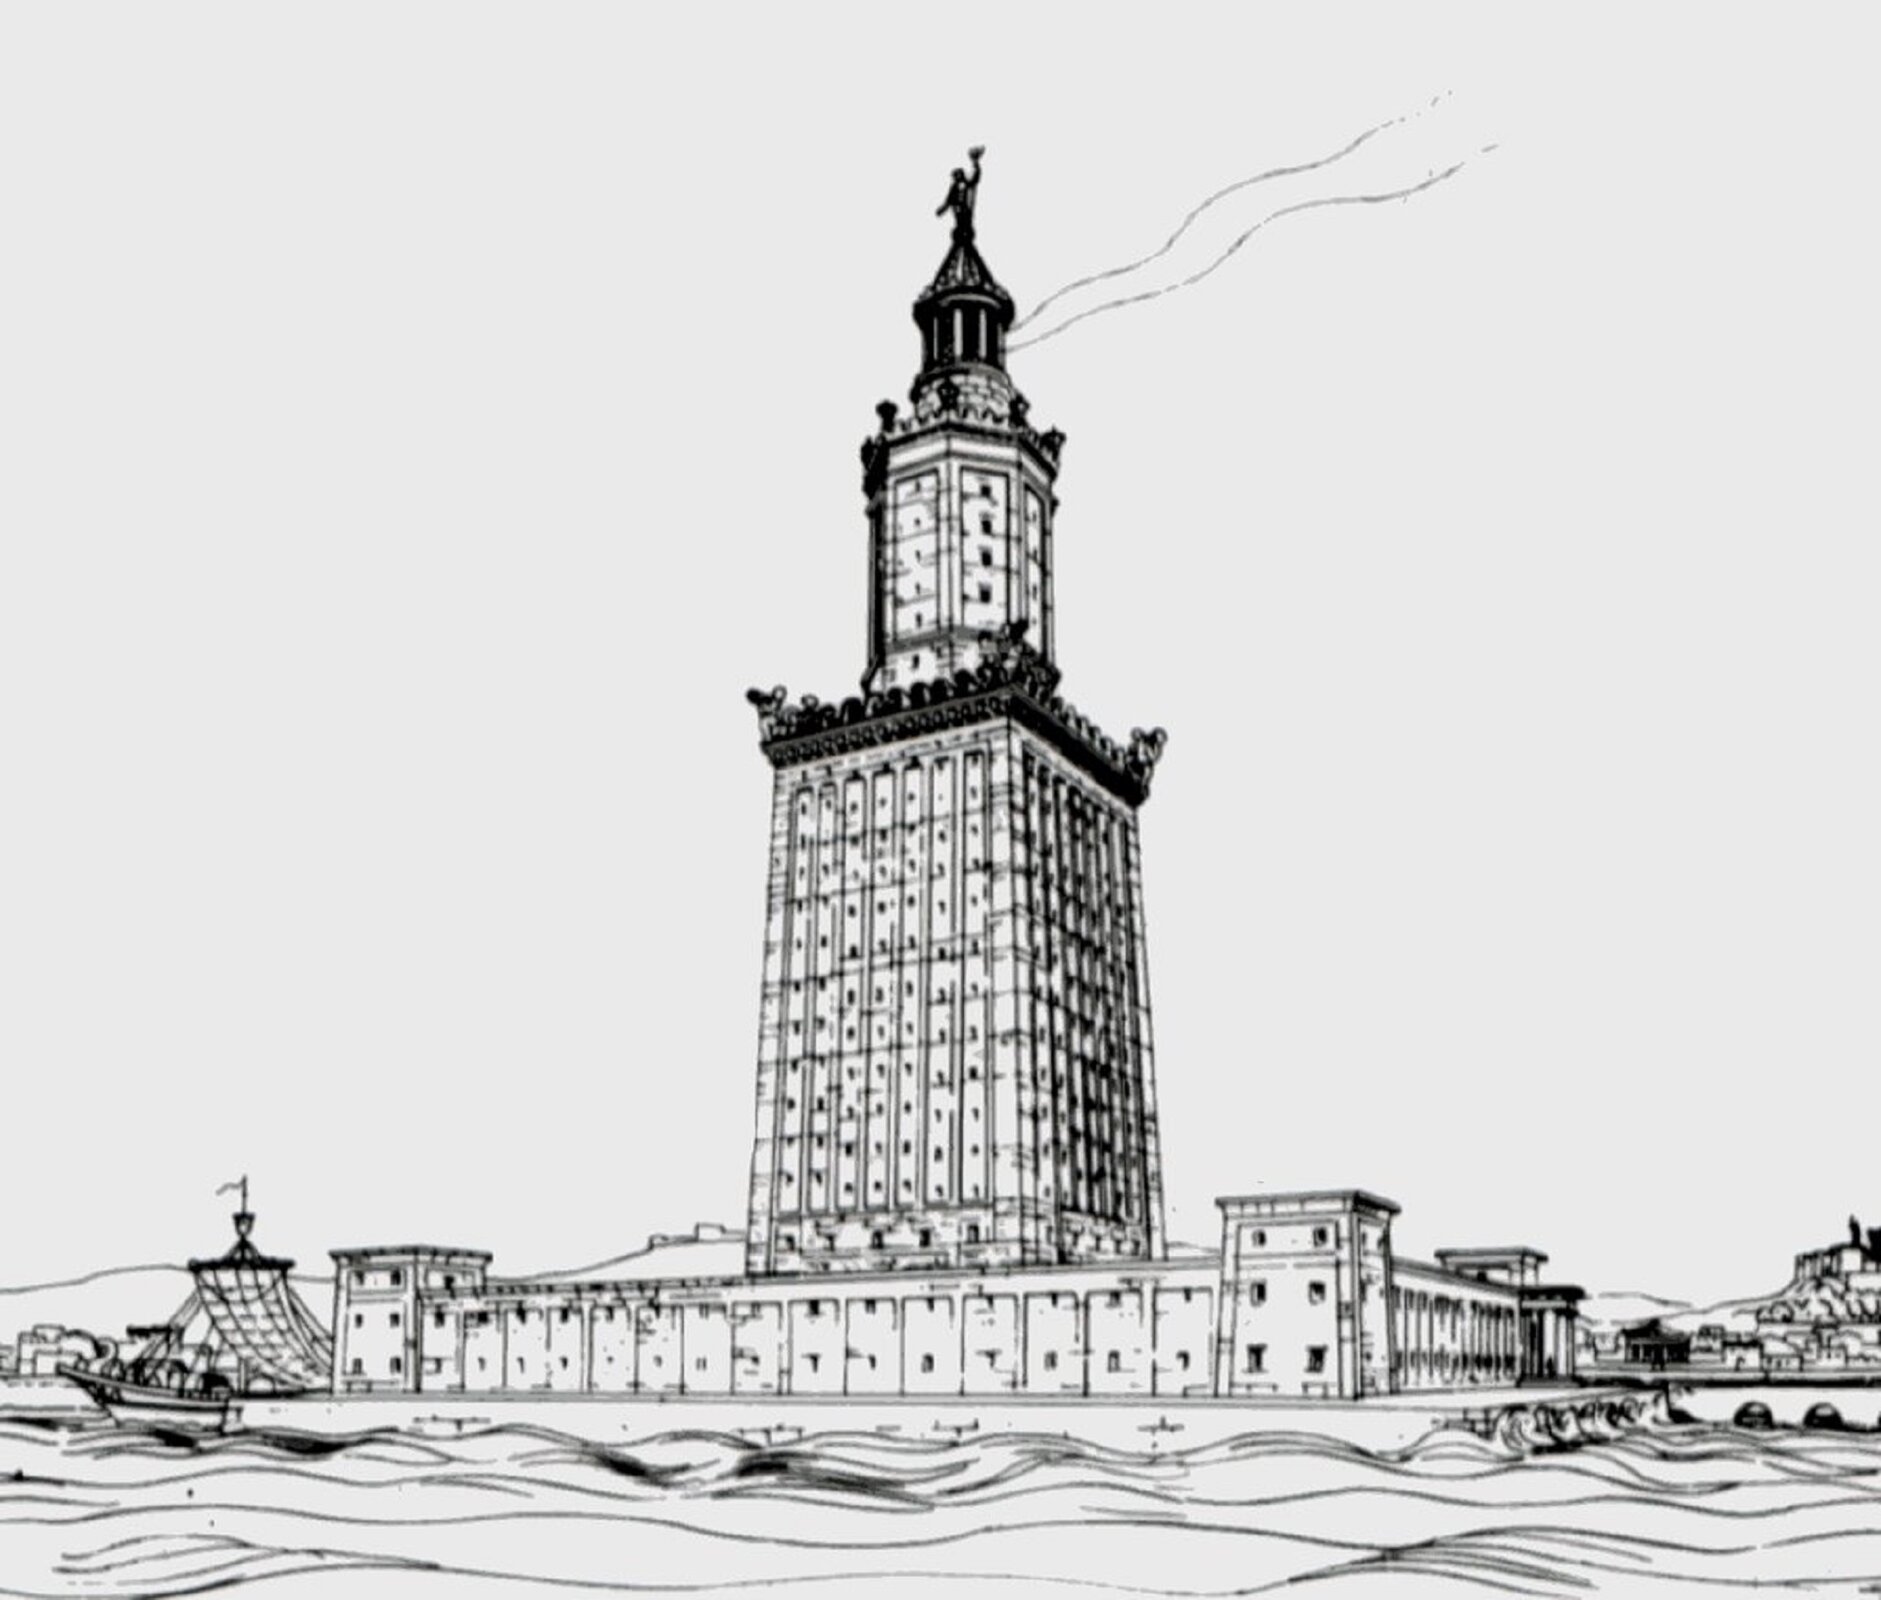 Czarno-biała ilustracja autorstwa Hermanna Thierscha przedstawia latarnię Faros w Aleksandrii. Latarnia stoi na płaskim podłożu i otoczona jest kamiennym murem z widocznymi wieżyczkami strażniczymi. Budowla jest wysoka i góruje nad pobliskimi domostwami.  Ze szczytu latarni wydobywa się dym, który informuje pobliskie statki i okręty o niebezpieczeństwach.